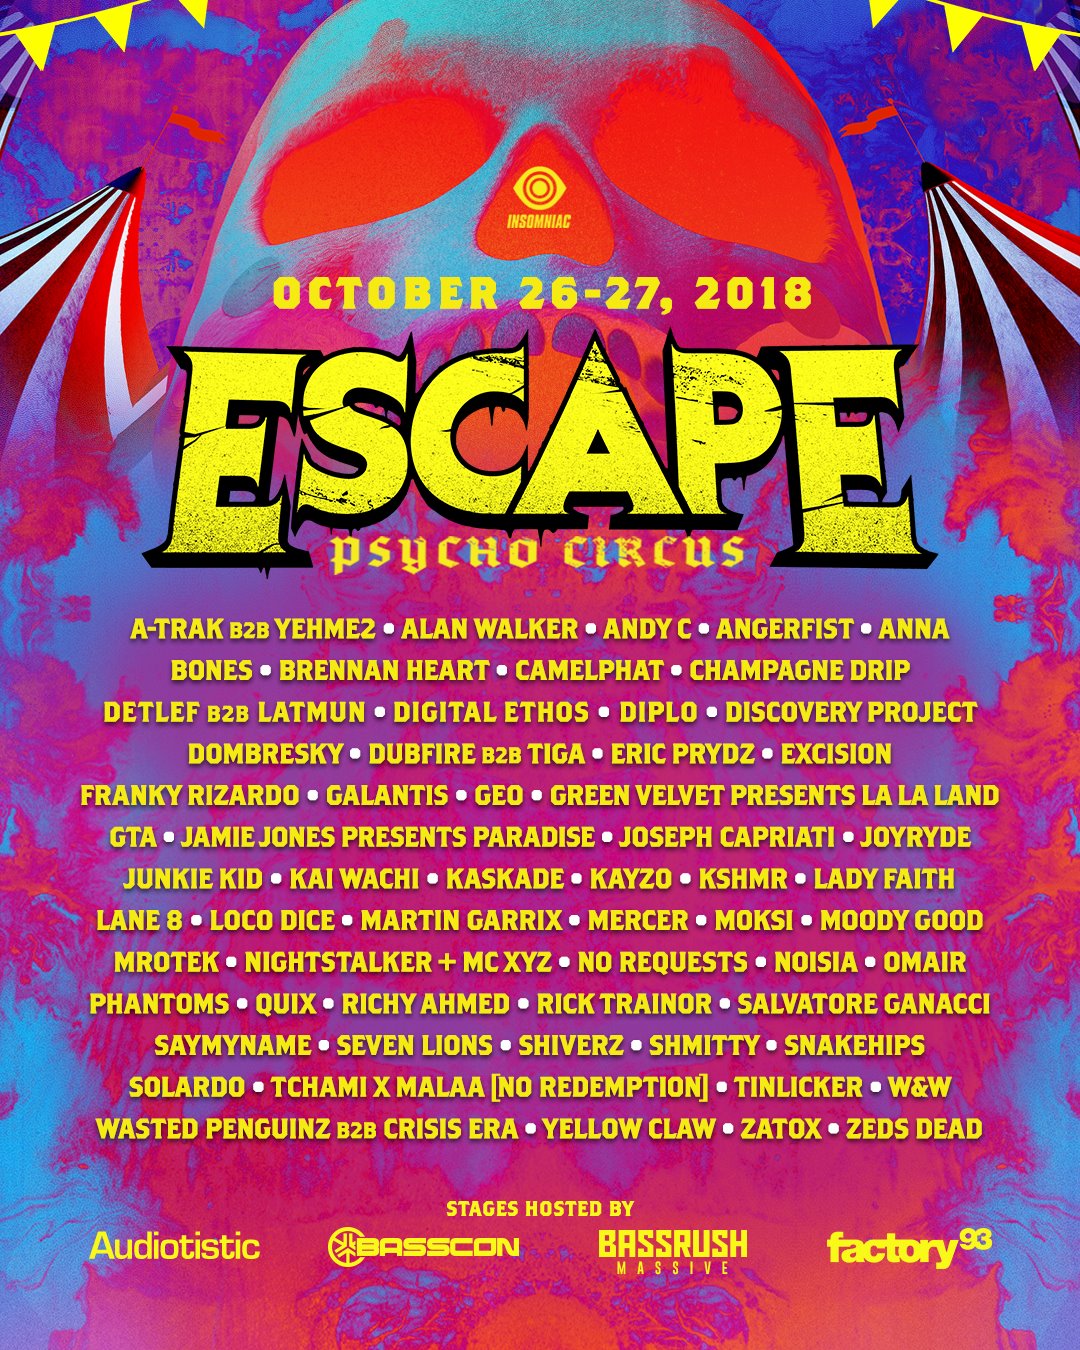 Escape Psycho Circus 2018 Lineup